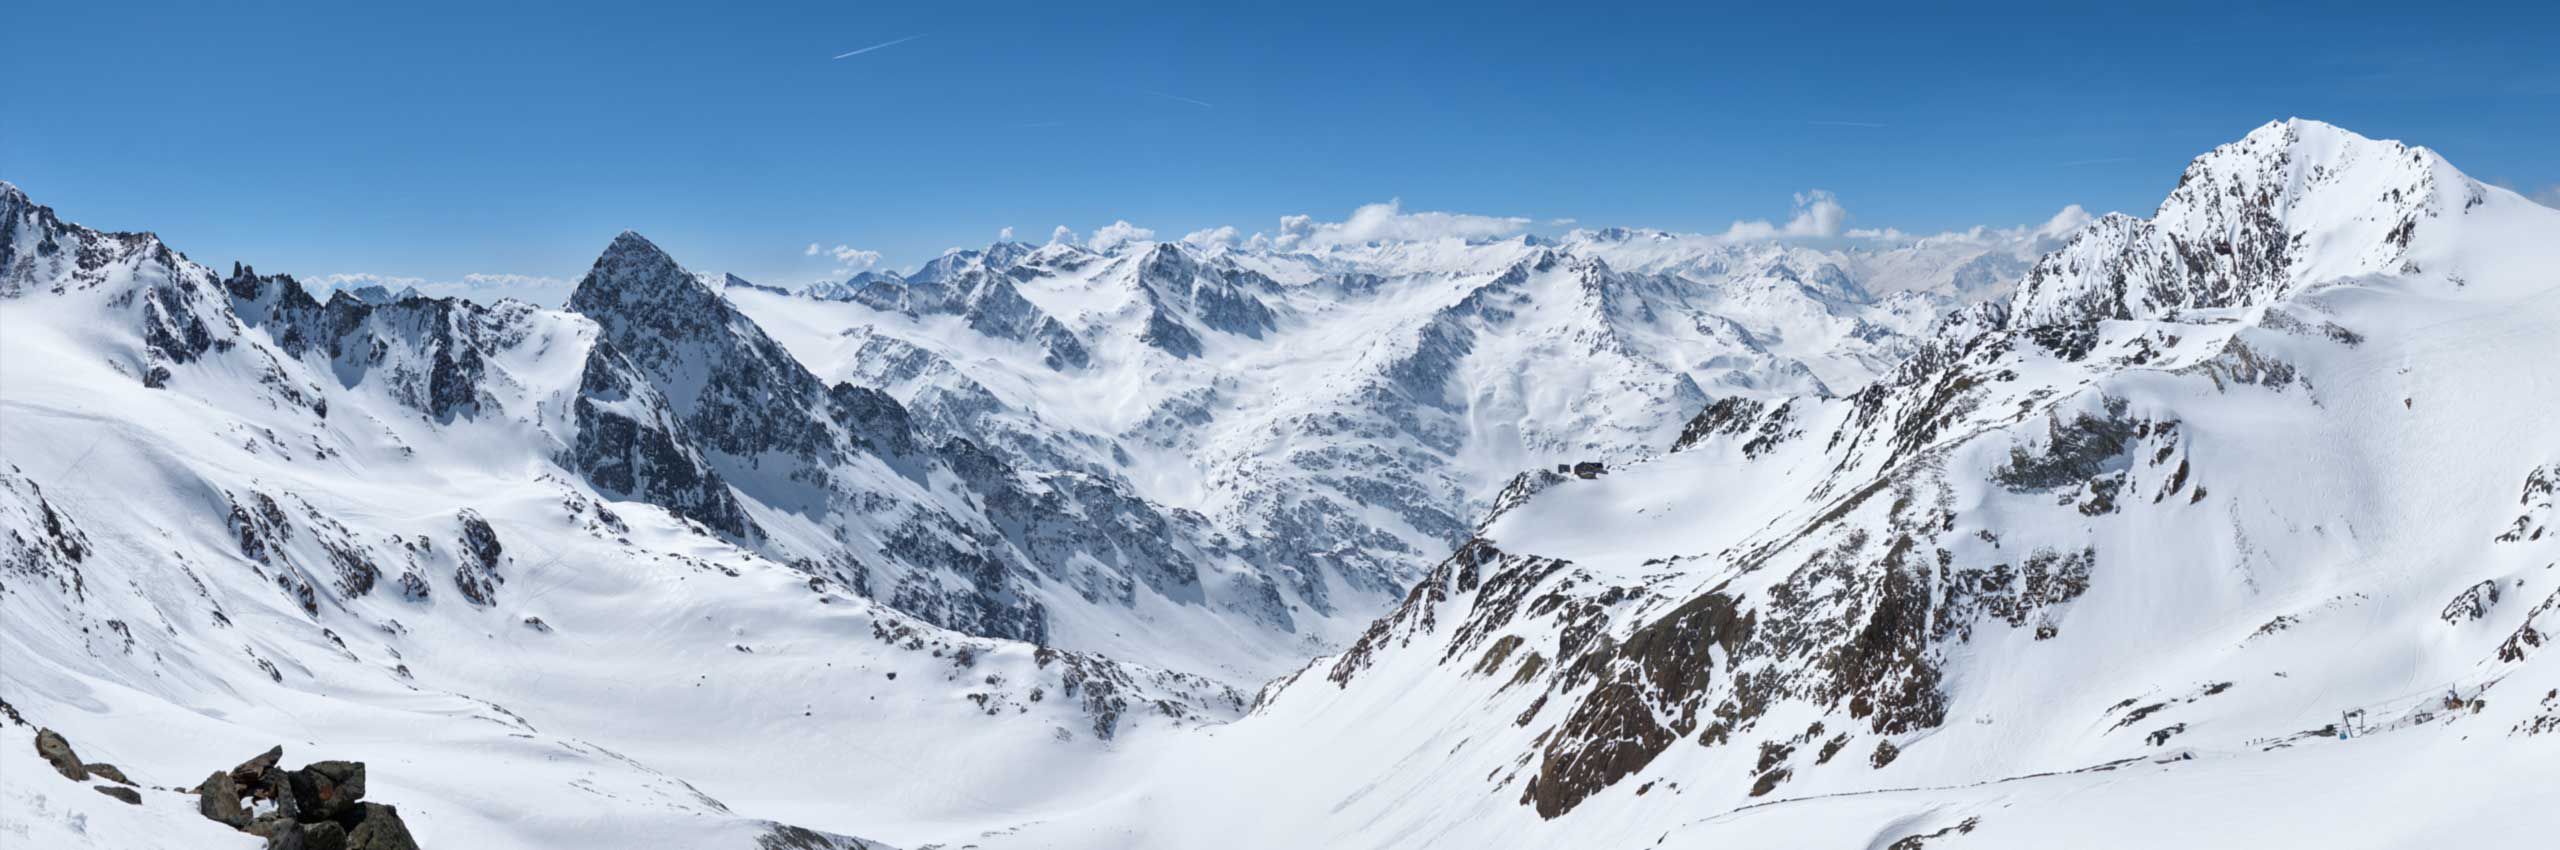 Stubai Glacier Ski Valley